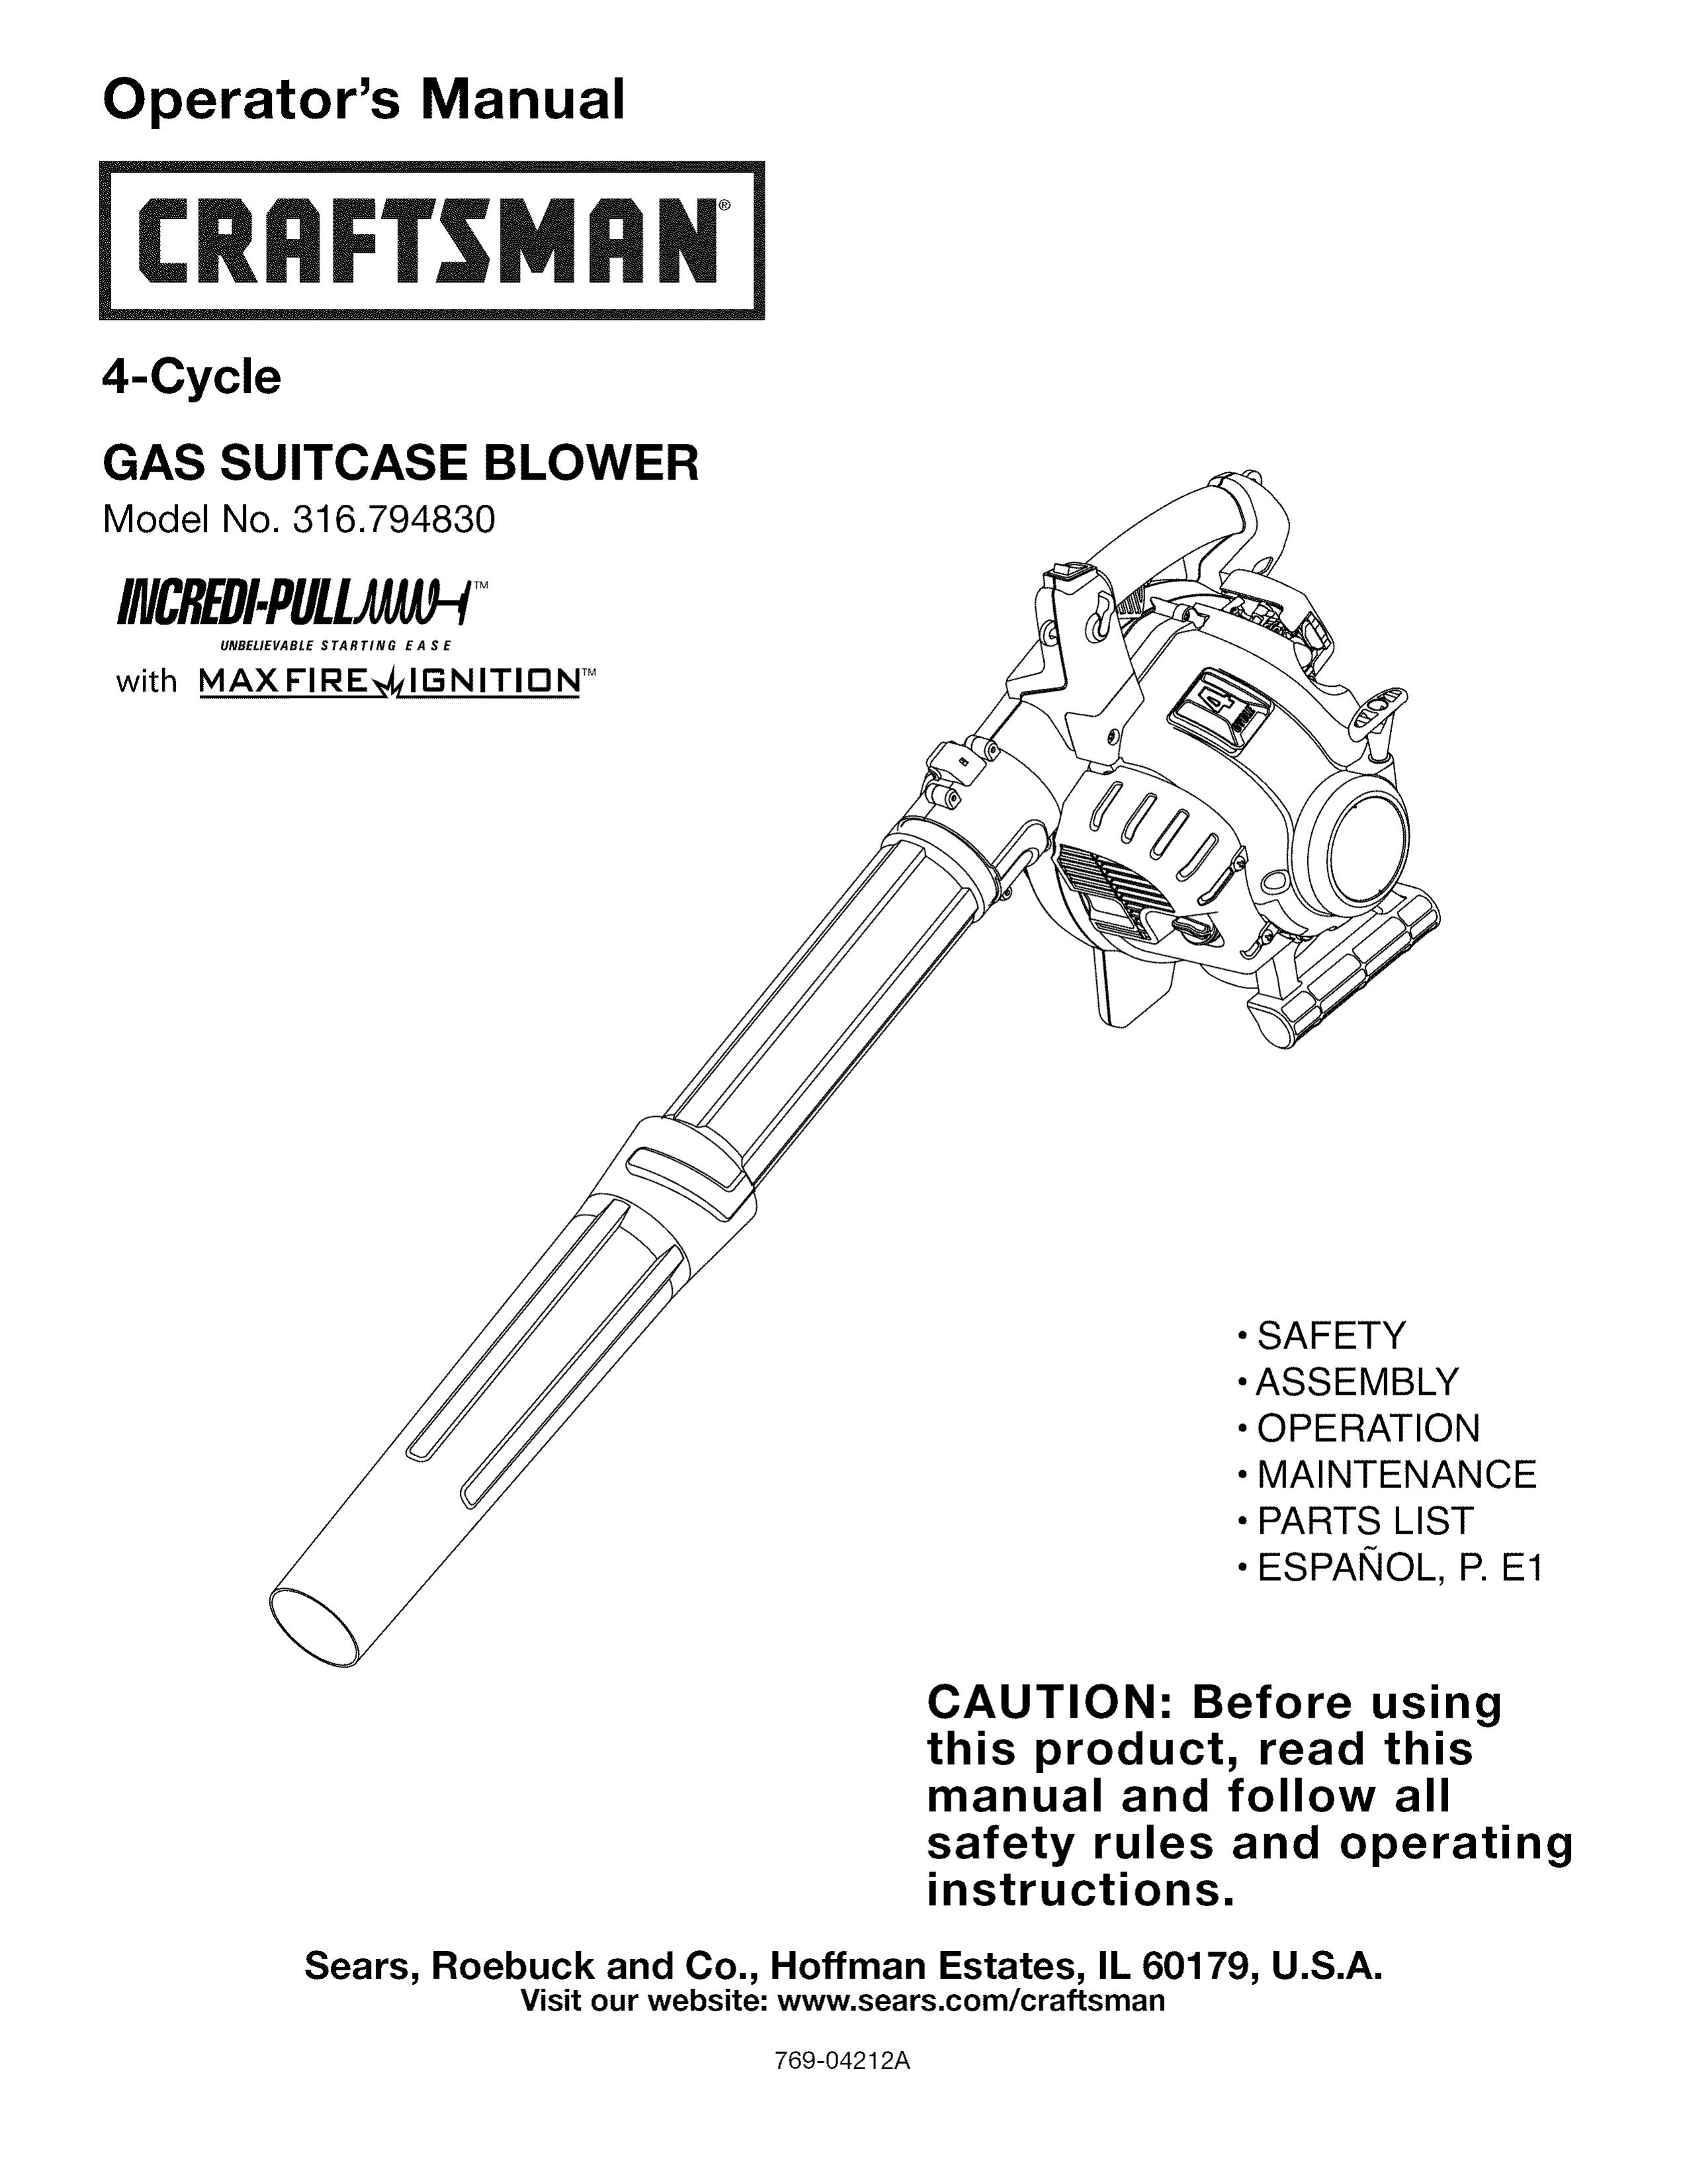 Craftsman 316.794830 Blower User Manual